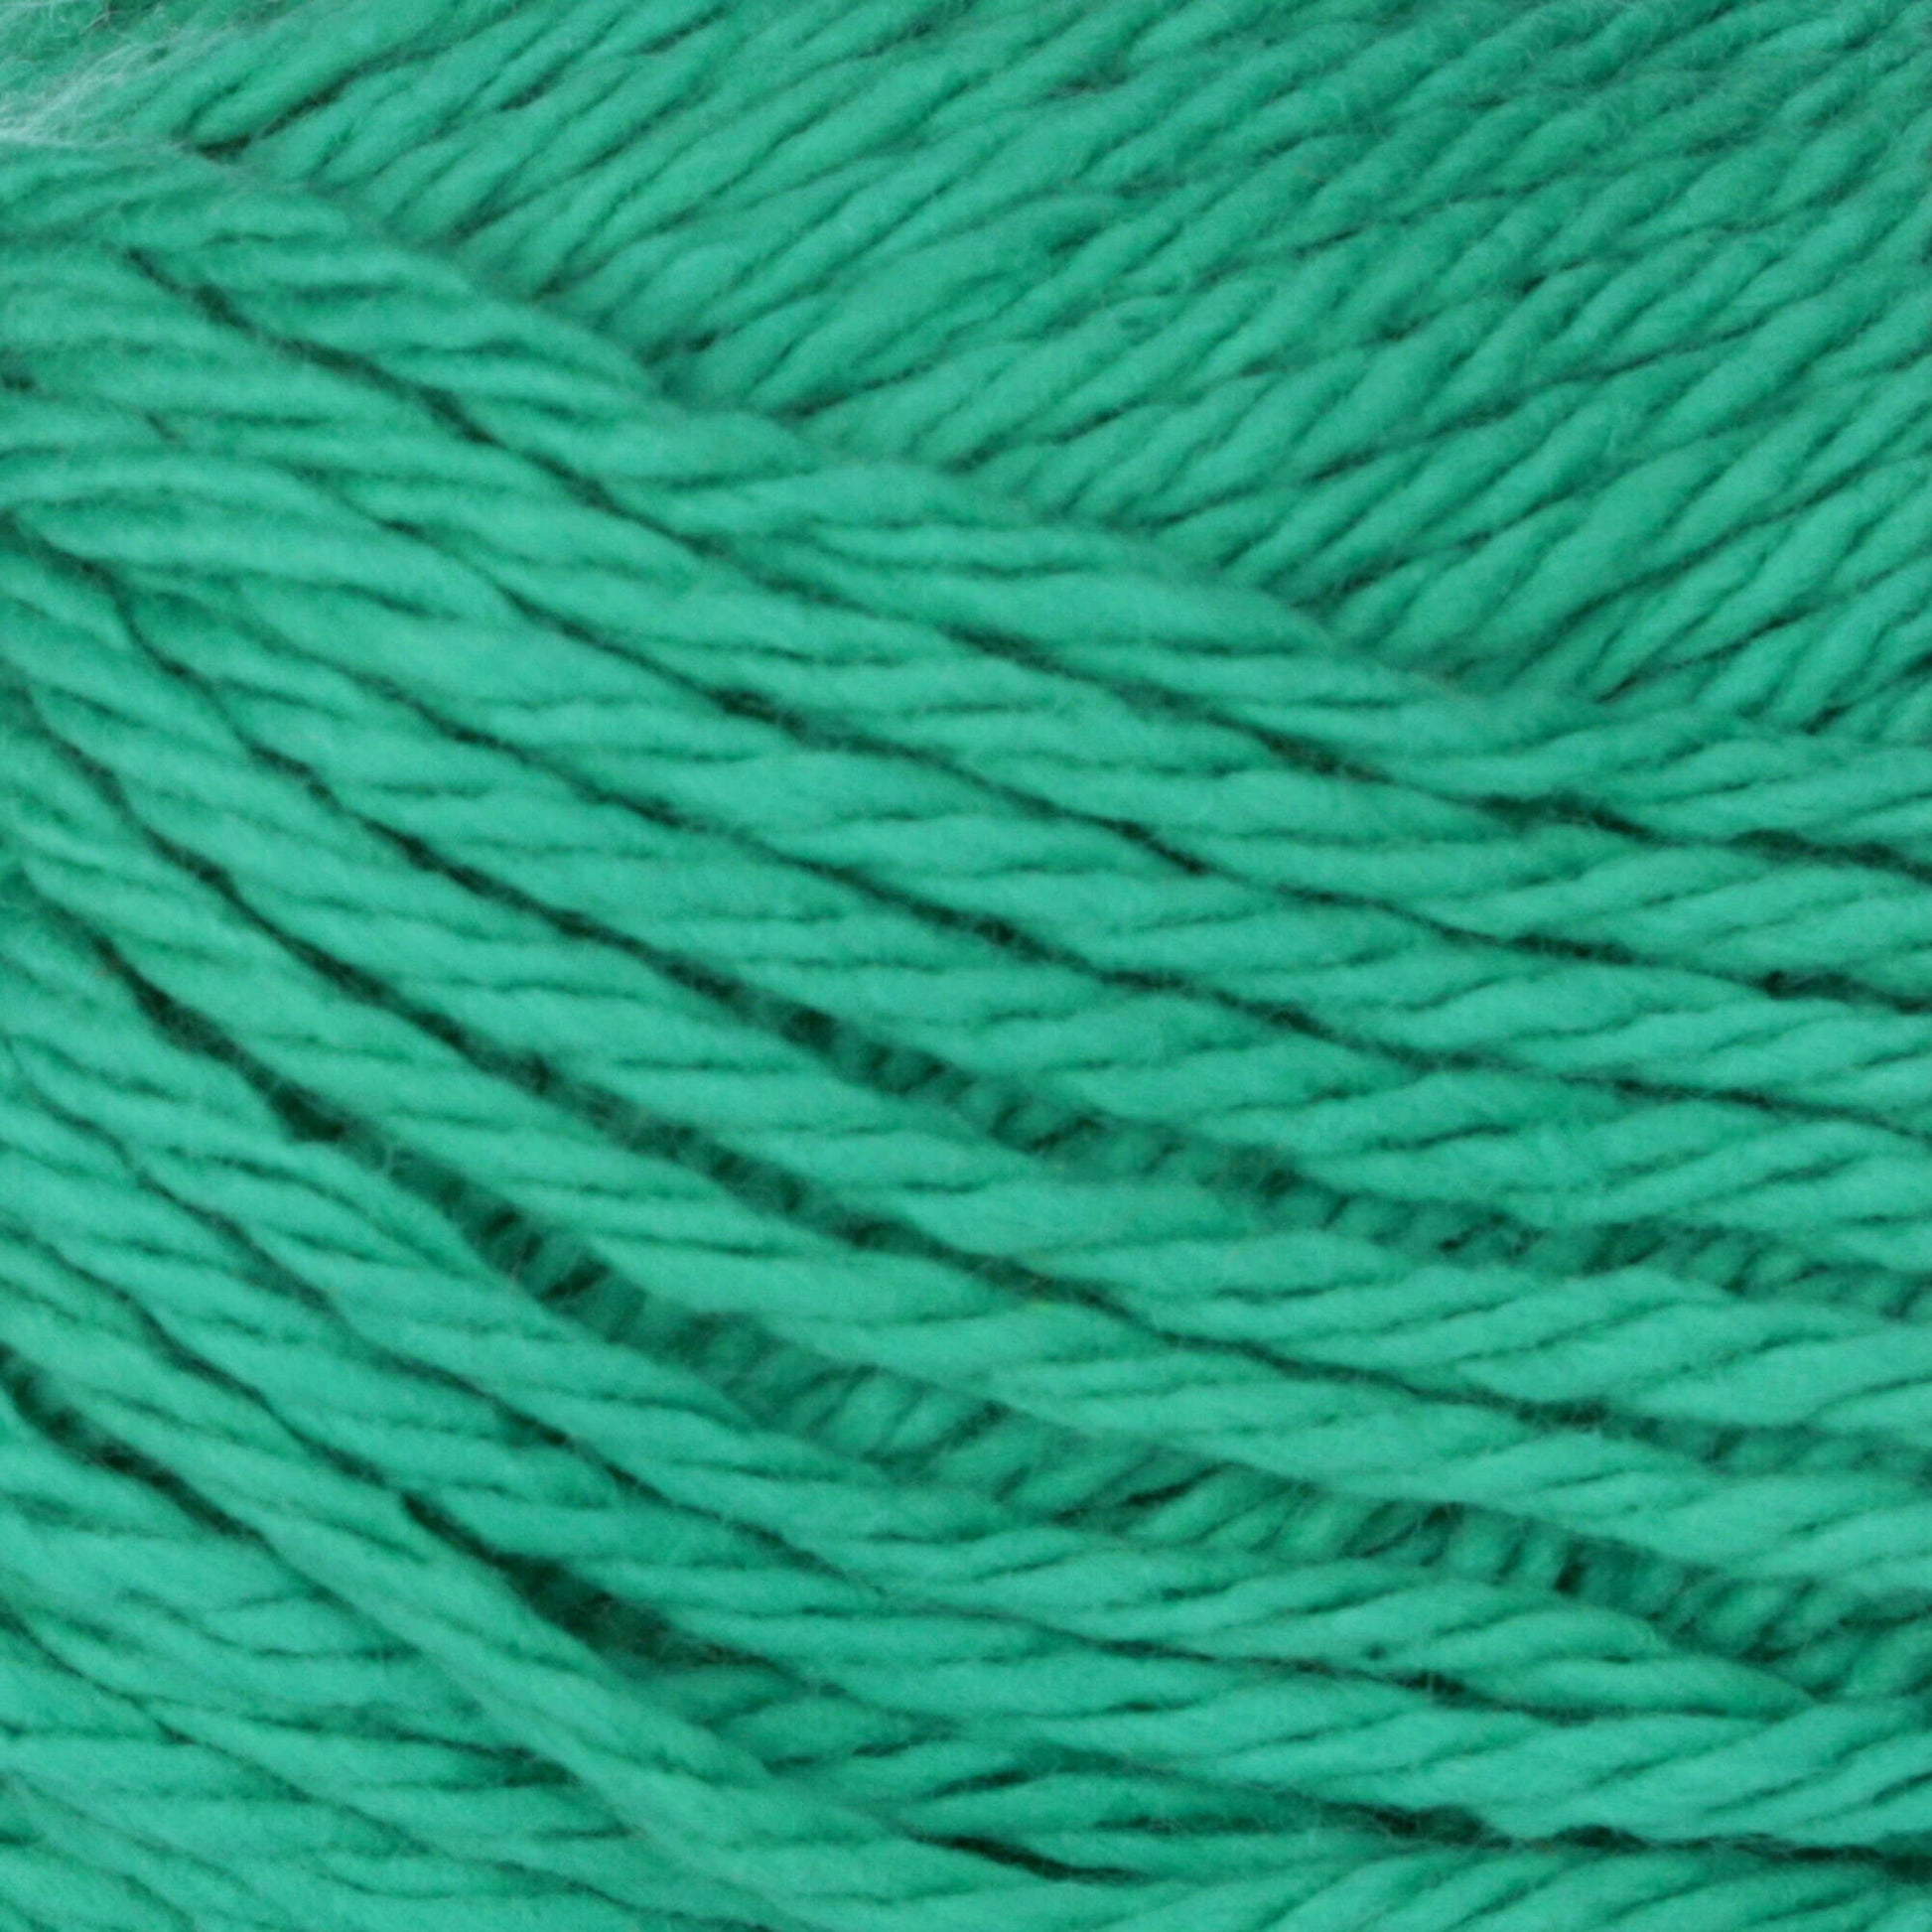 Bernat Handicrafter Cotton Yarn - Clearance Shades